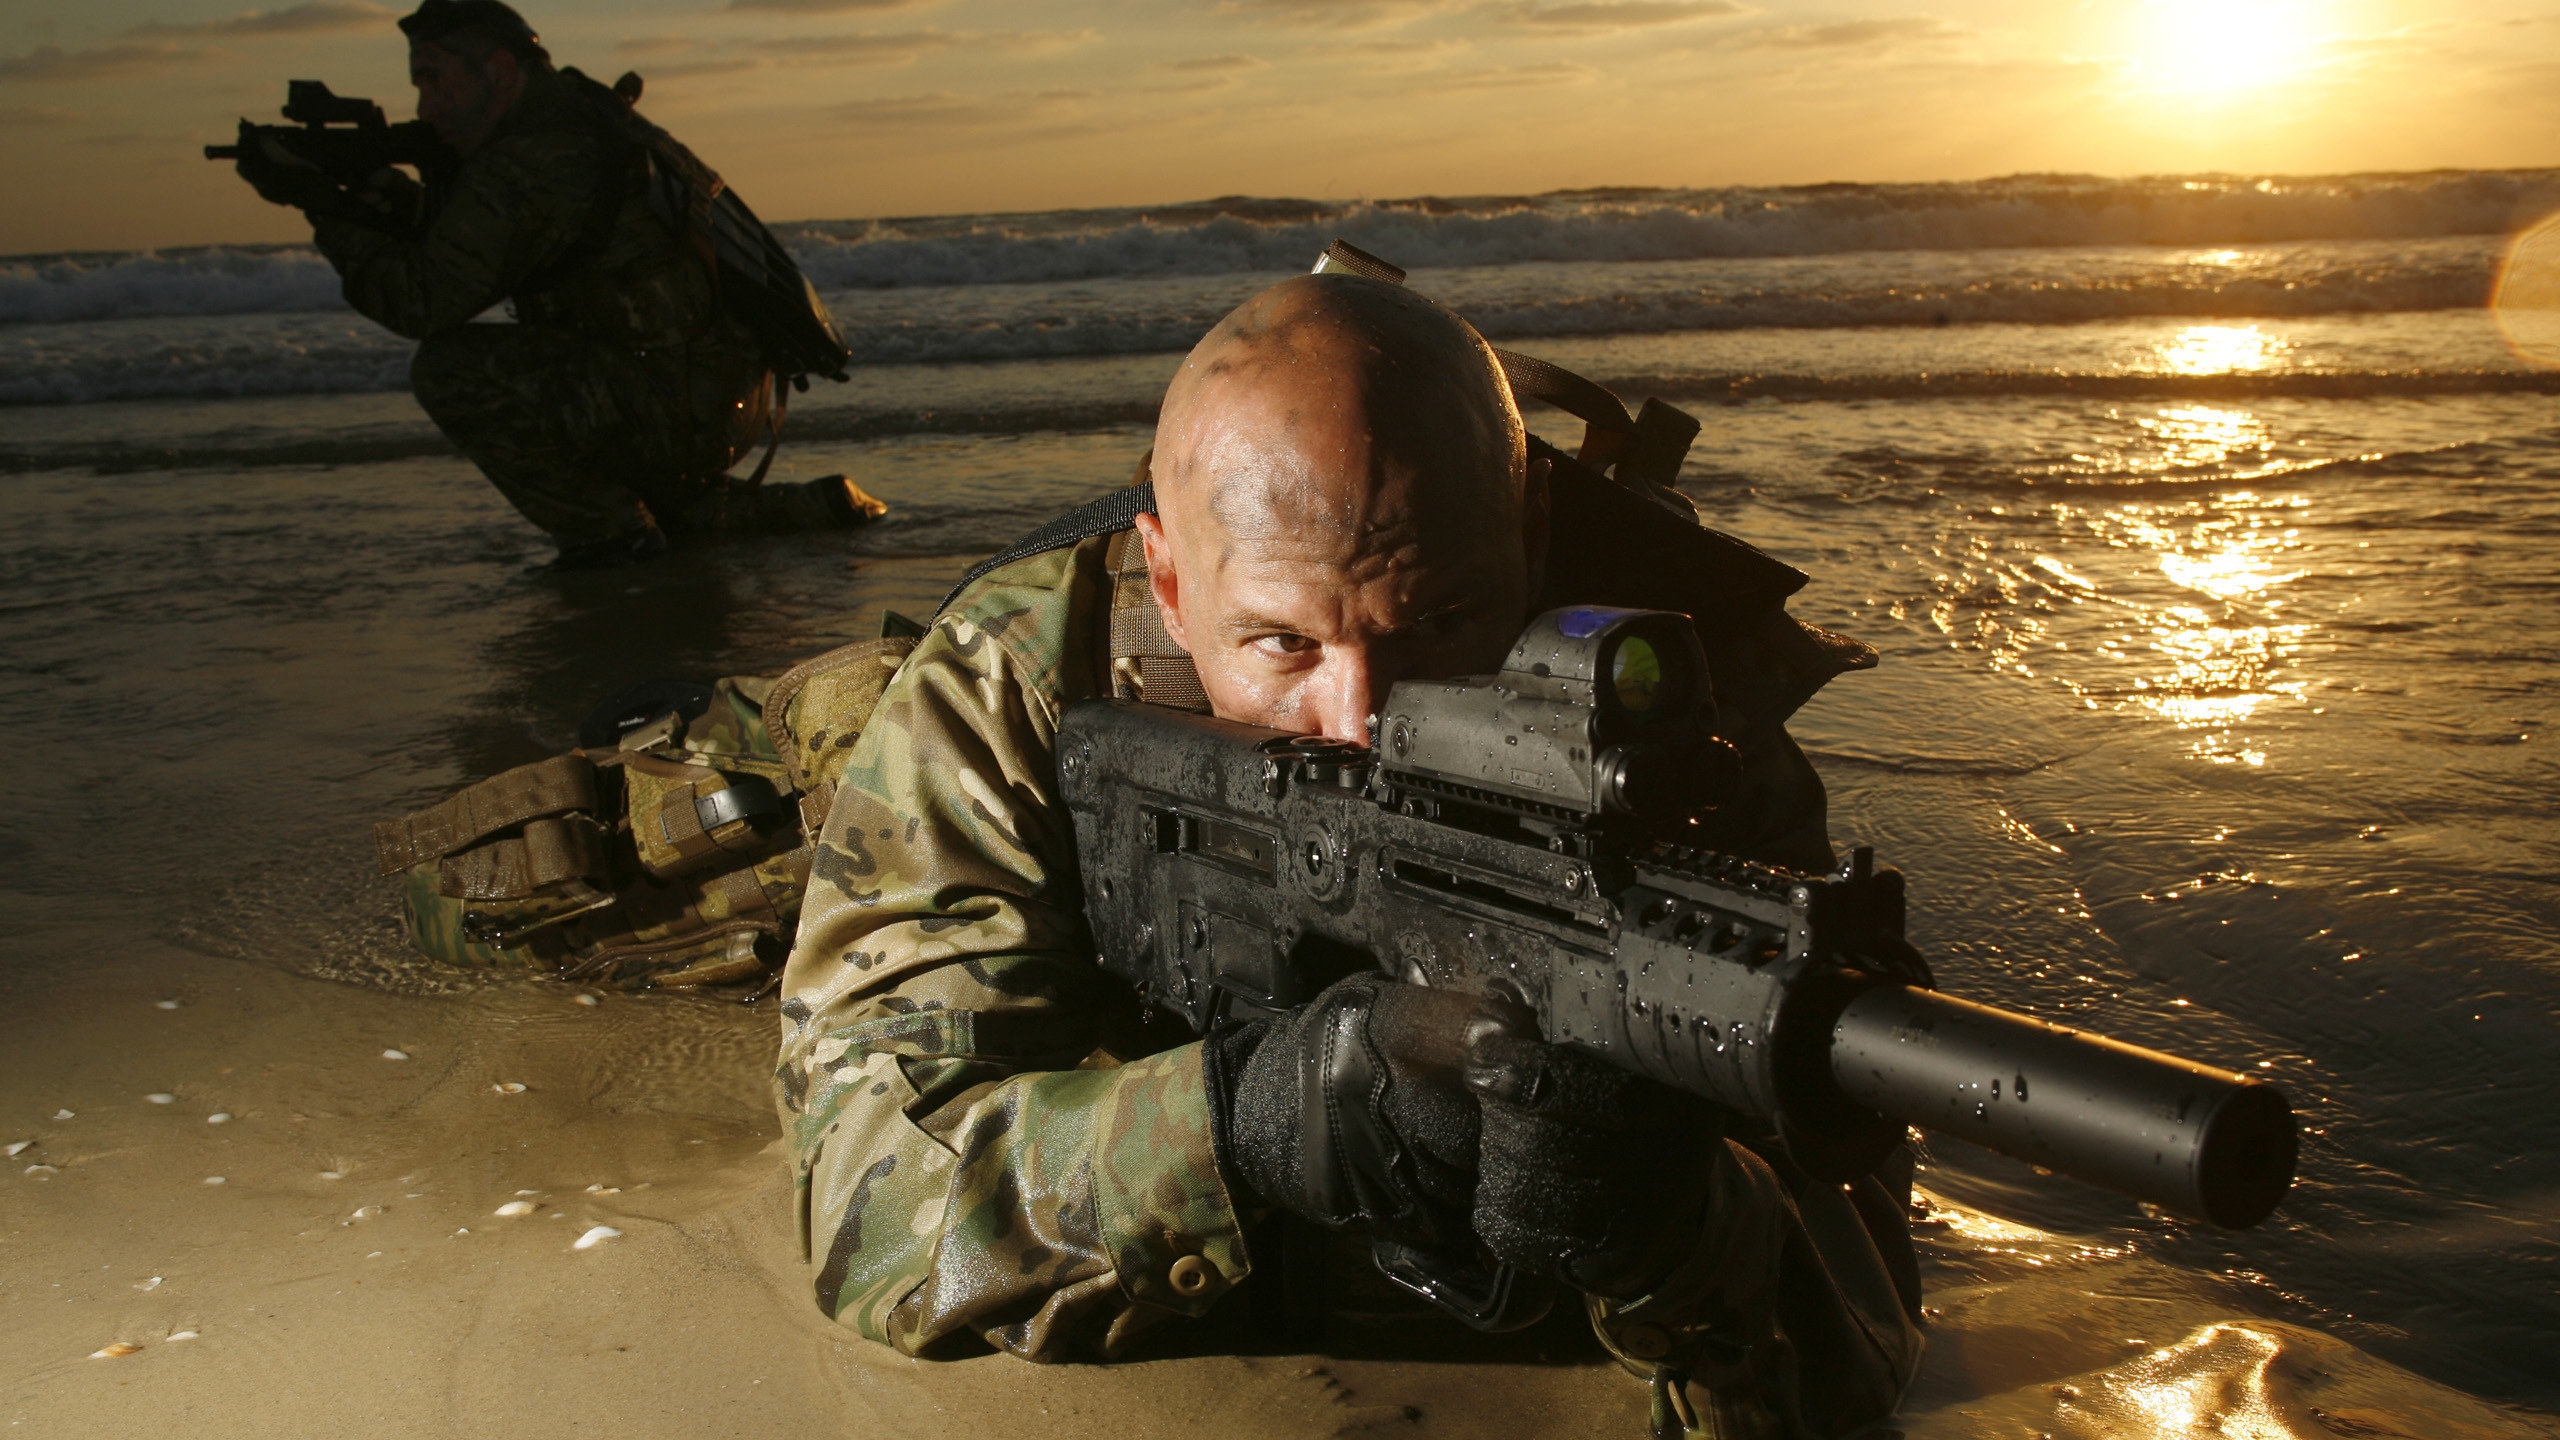 Sniper War for 2560x1440 HDTV resolution